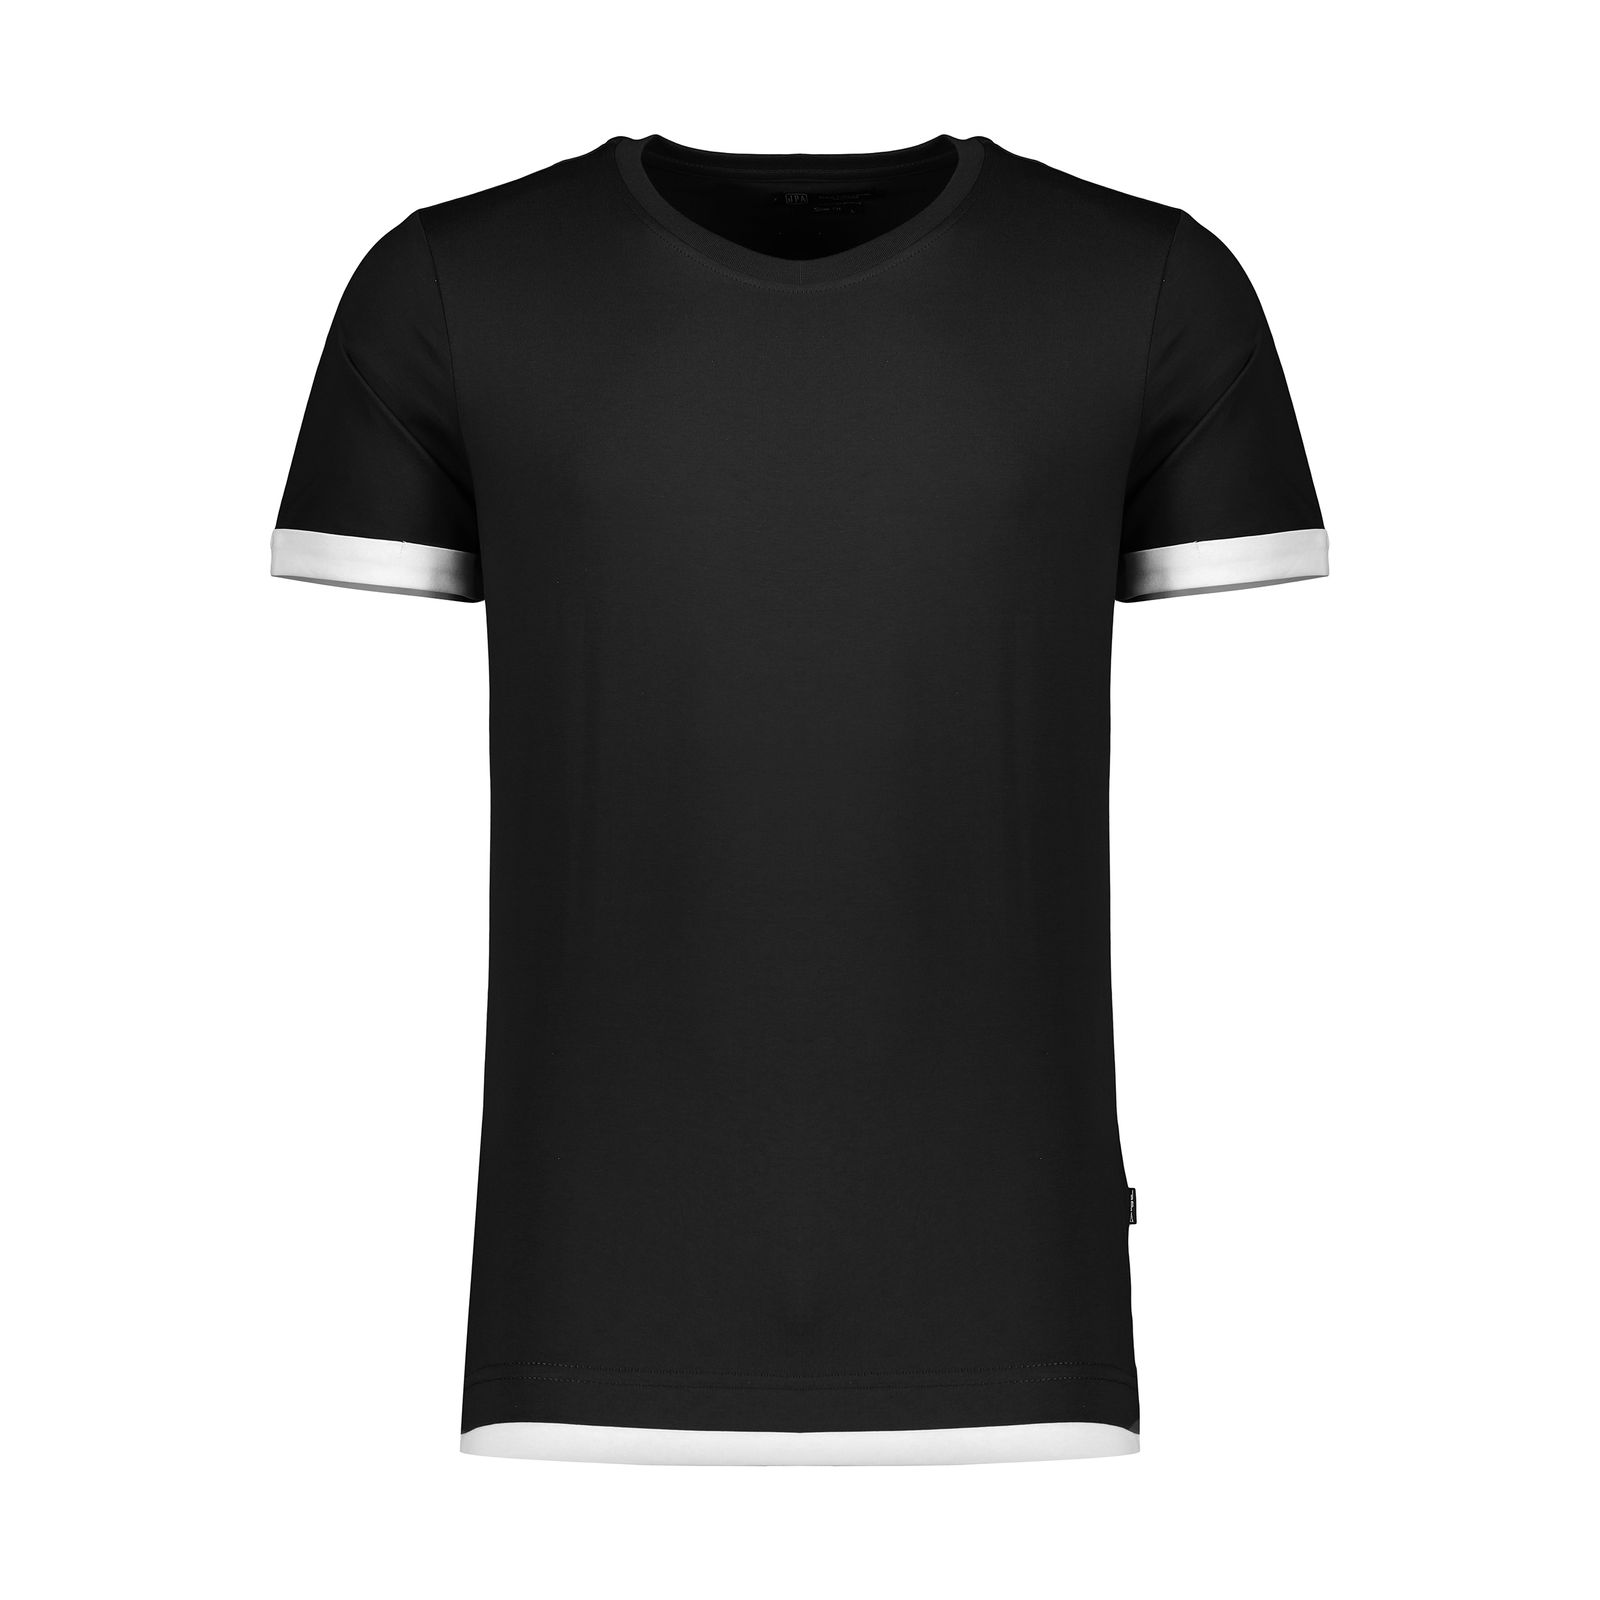 تی شرت مردانه جامه پوش آرا مدل 4011010305-99 -  - 1